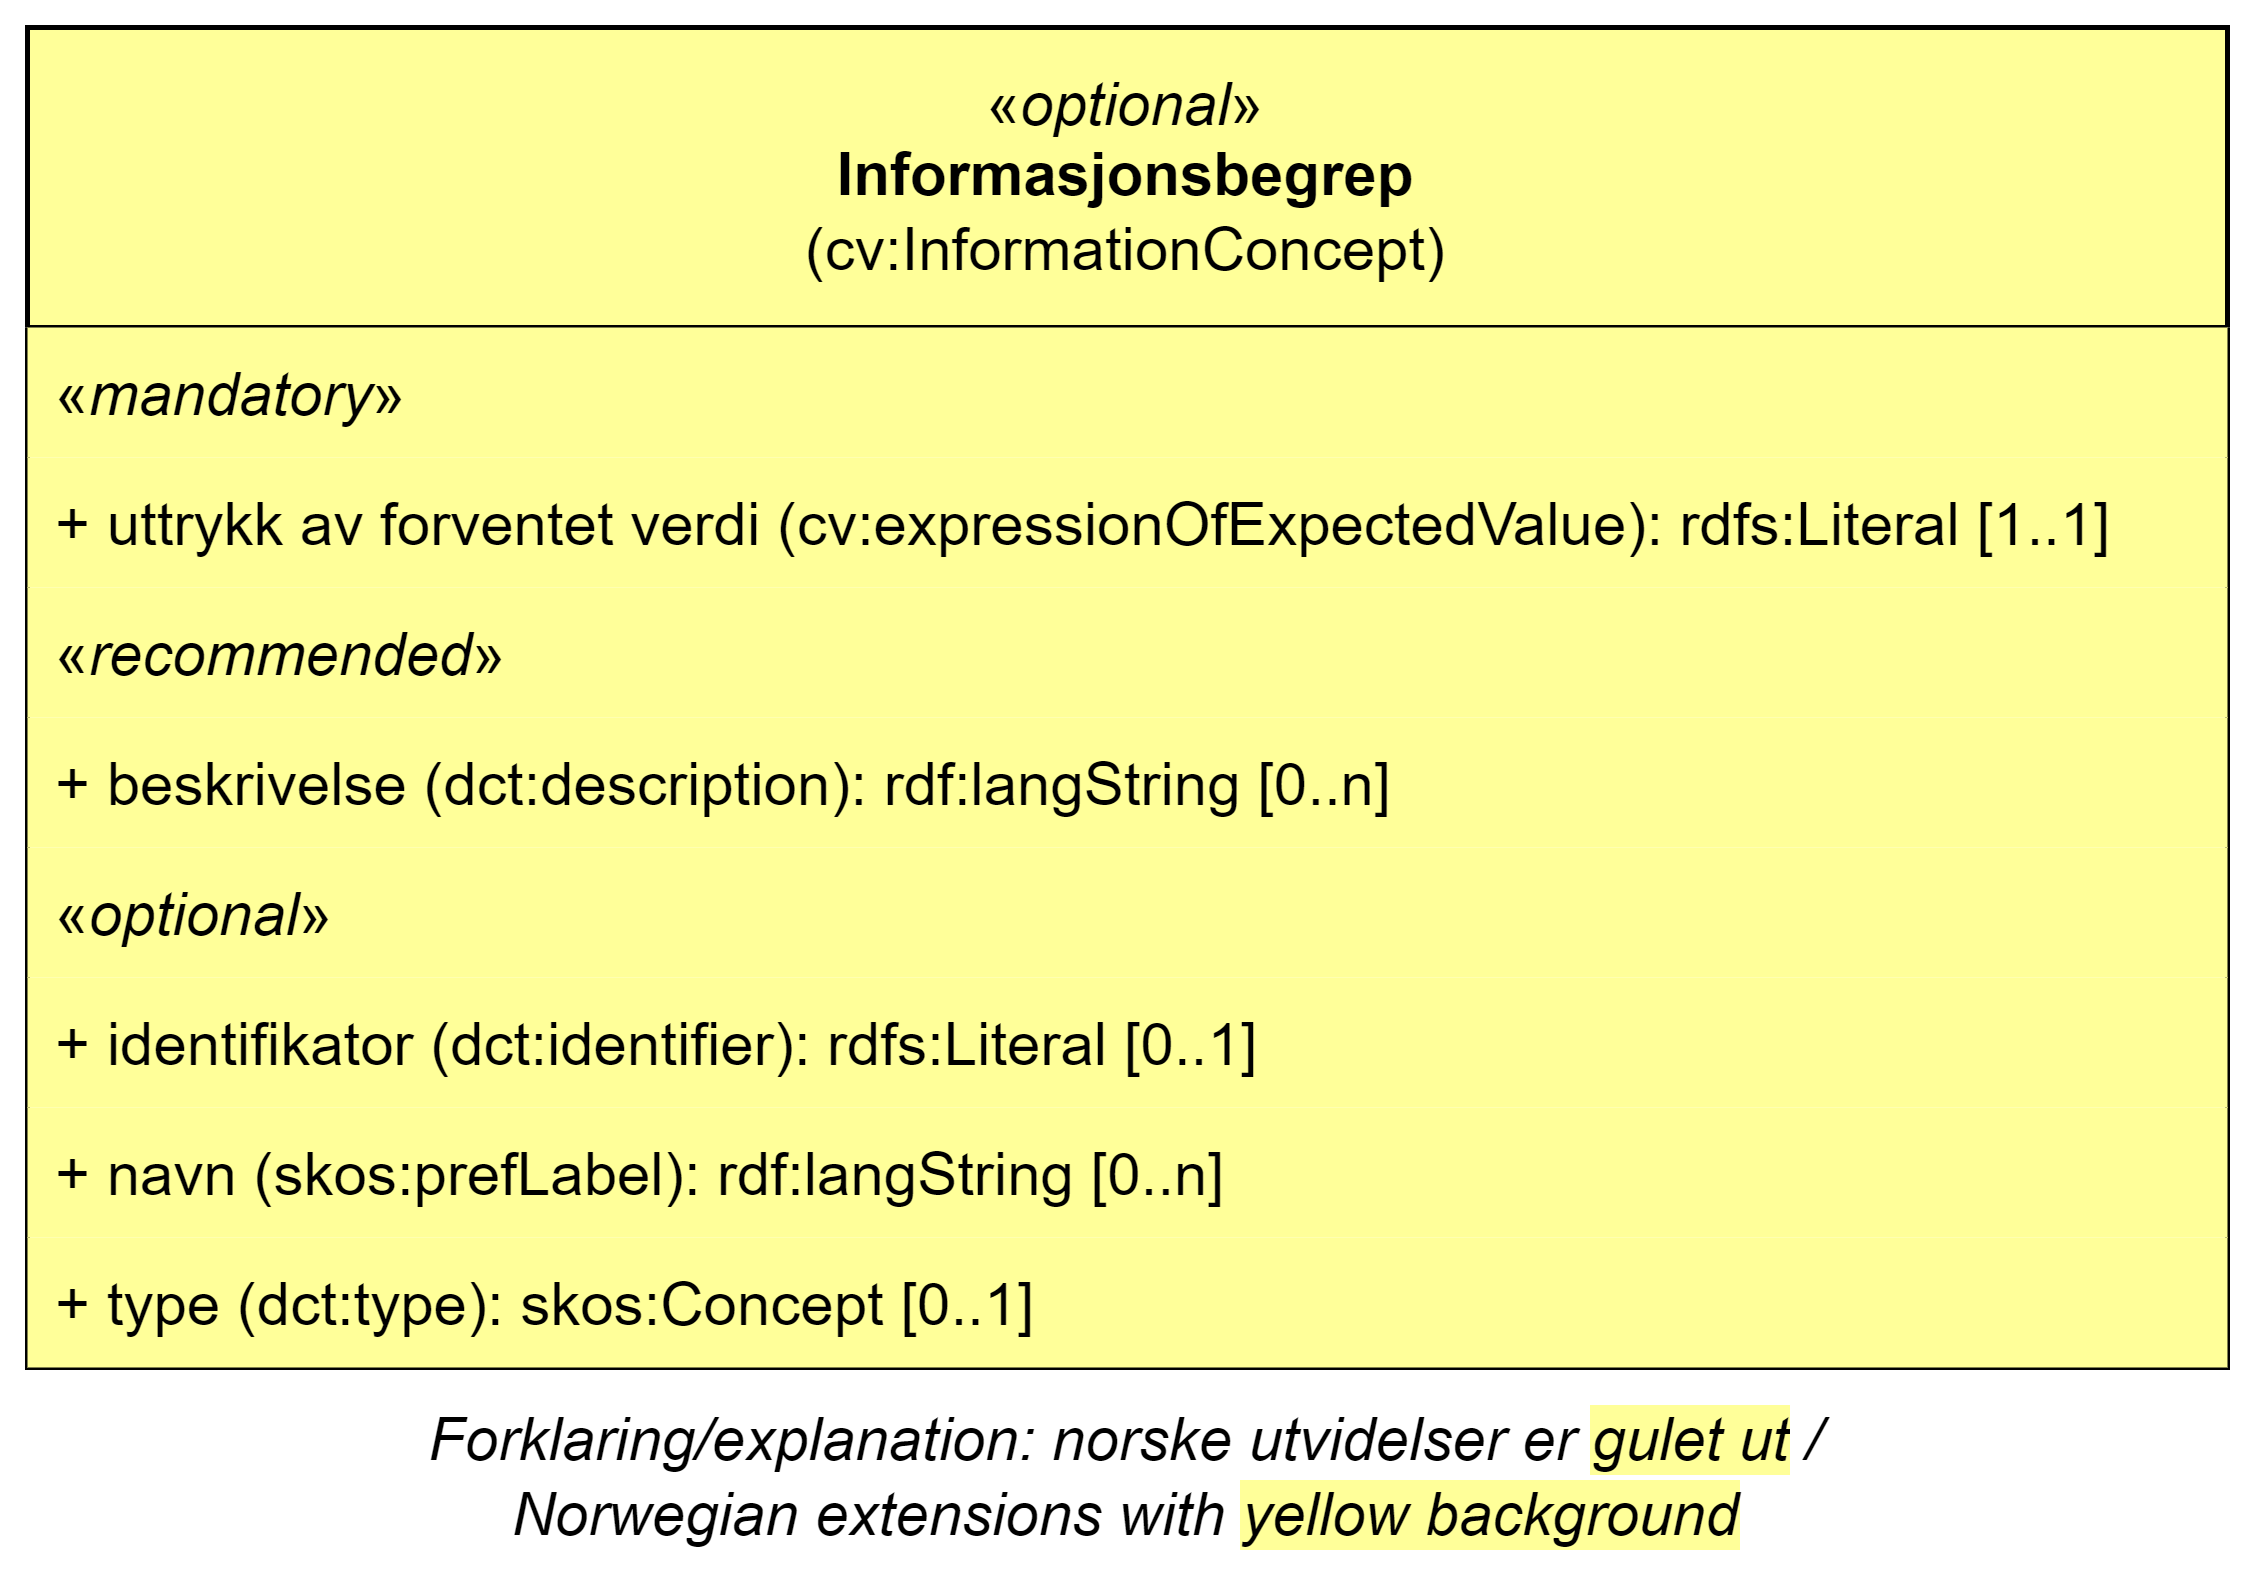 UML-diagram med klassen Informasjonsbegrep og dens egenskaper. Norske utvidelser er gulet ut. Innholdet i diagrammet er forklart i teksten.